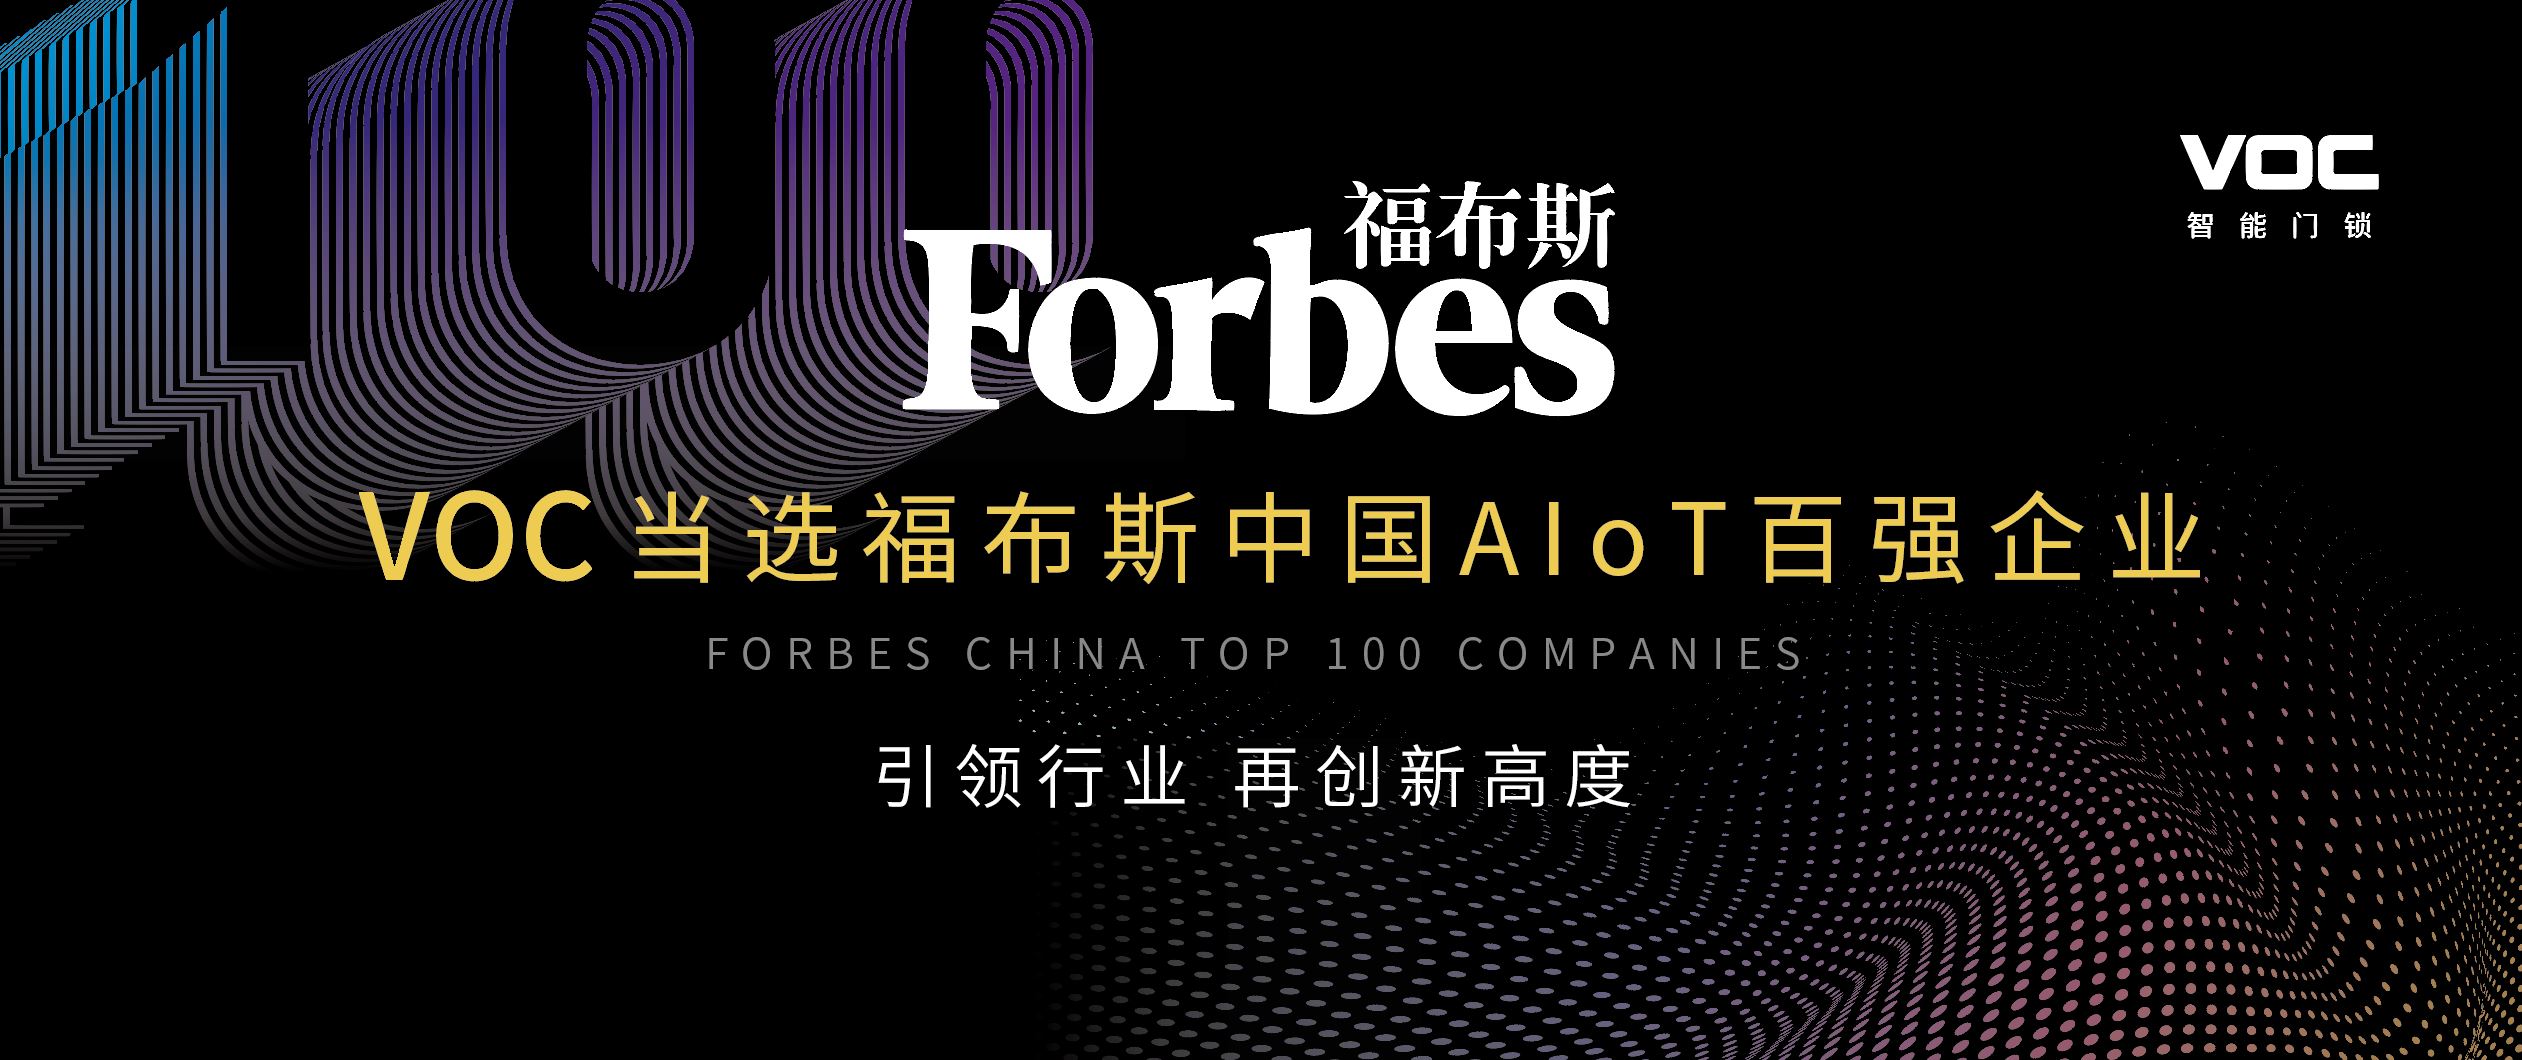 以实力证明领导力，VOC当选福布斯中国AIoT百强企业！